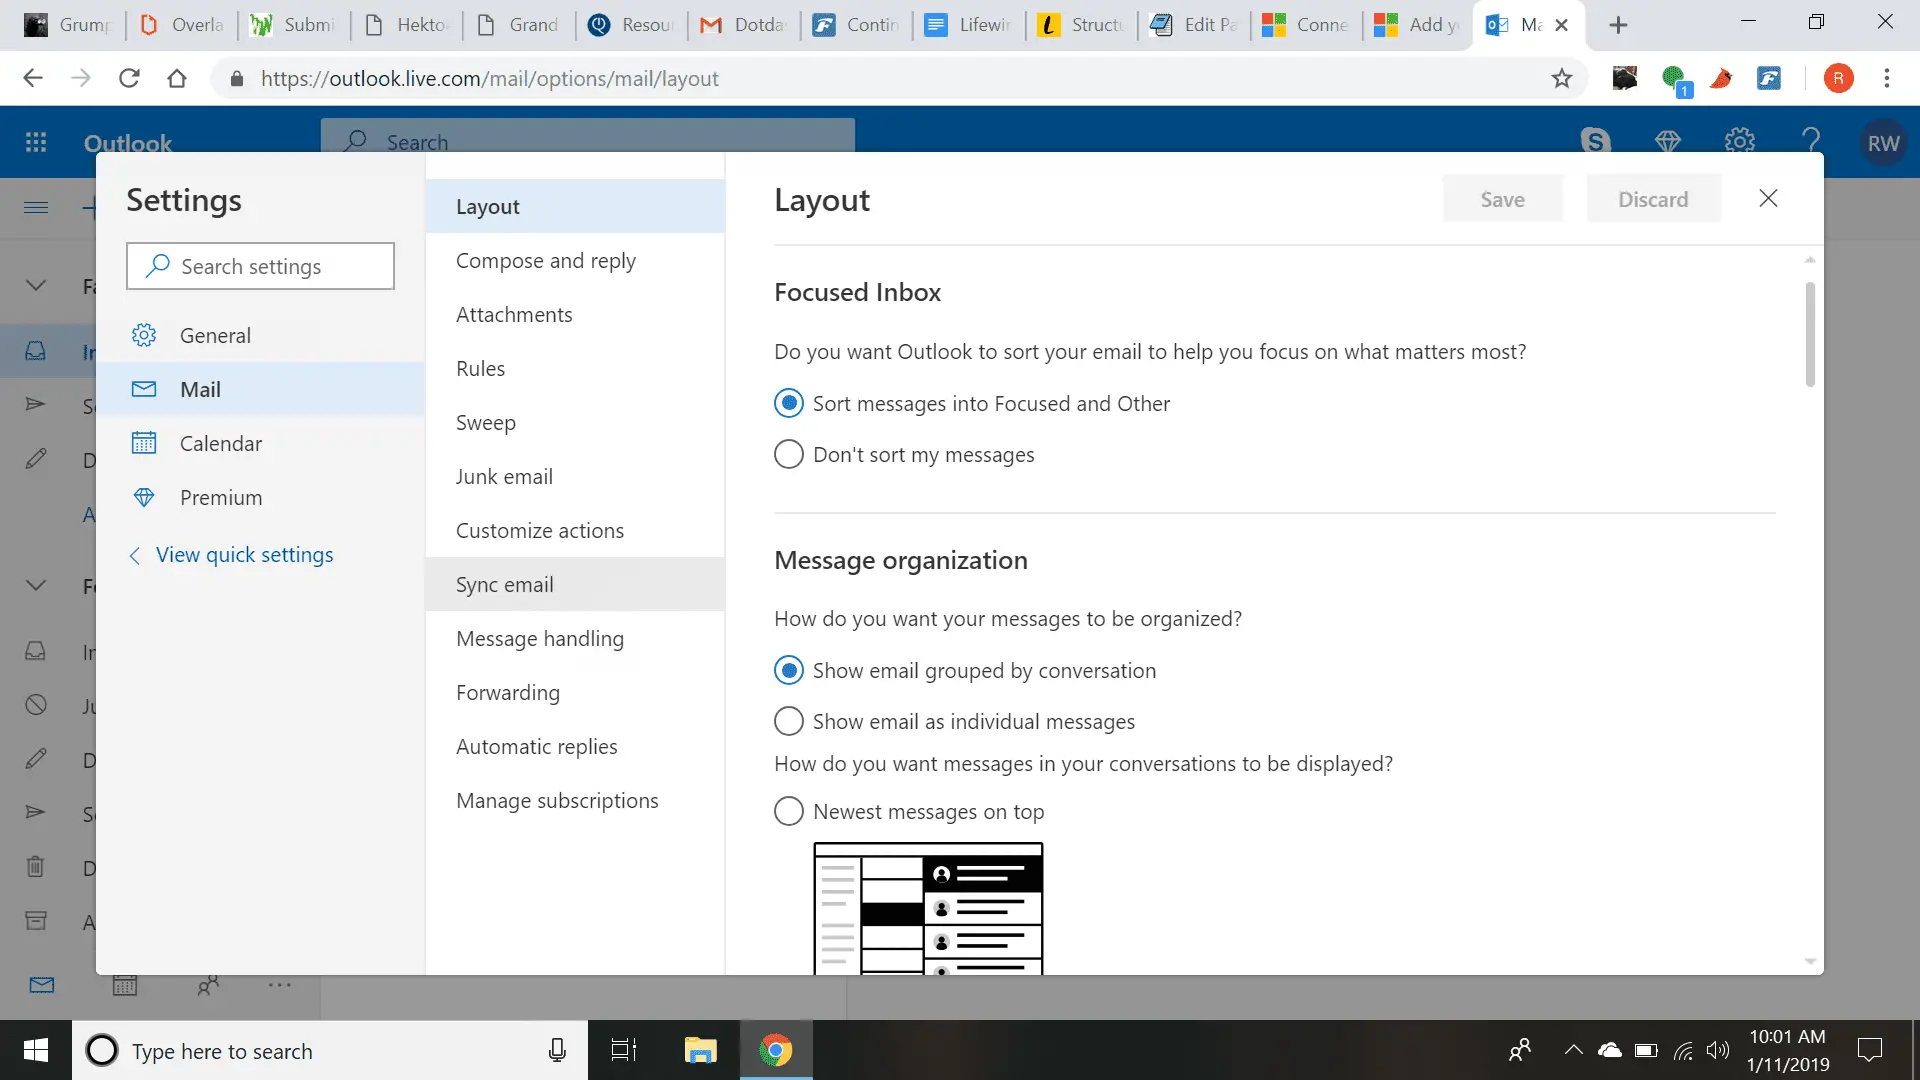 captura de tela do menu de configurações do Outlook sob o layout